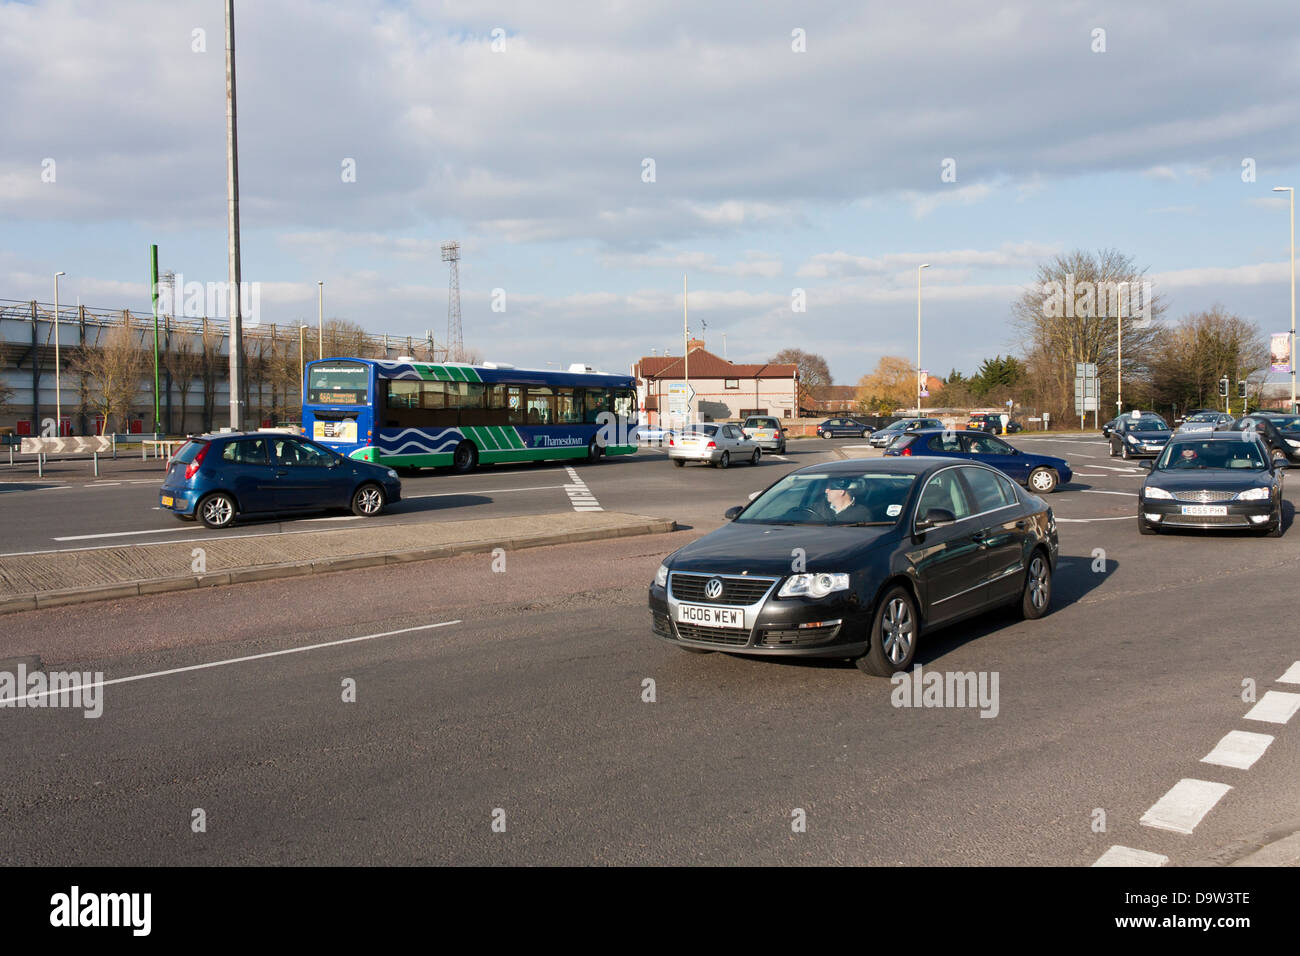 Autovetture e autobus negoziare i cinque mini rotatorie al famigerato rotatoria magica a Swindon. Foto Stock